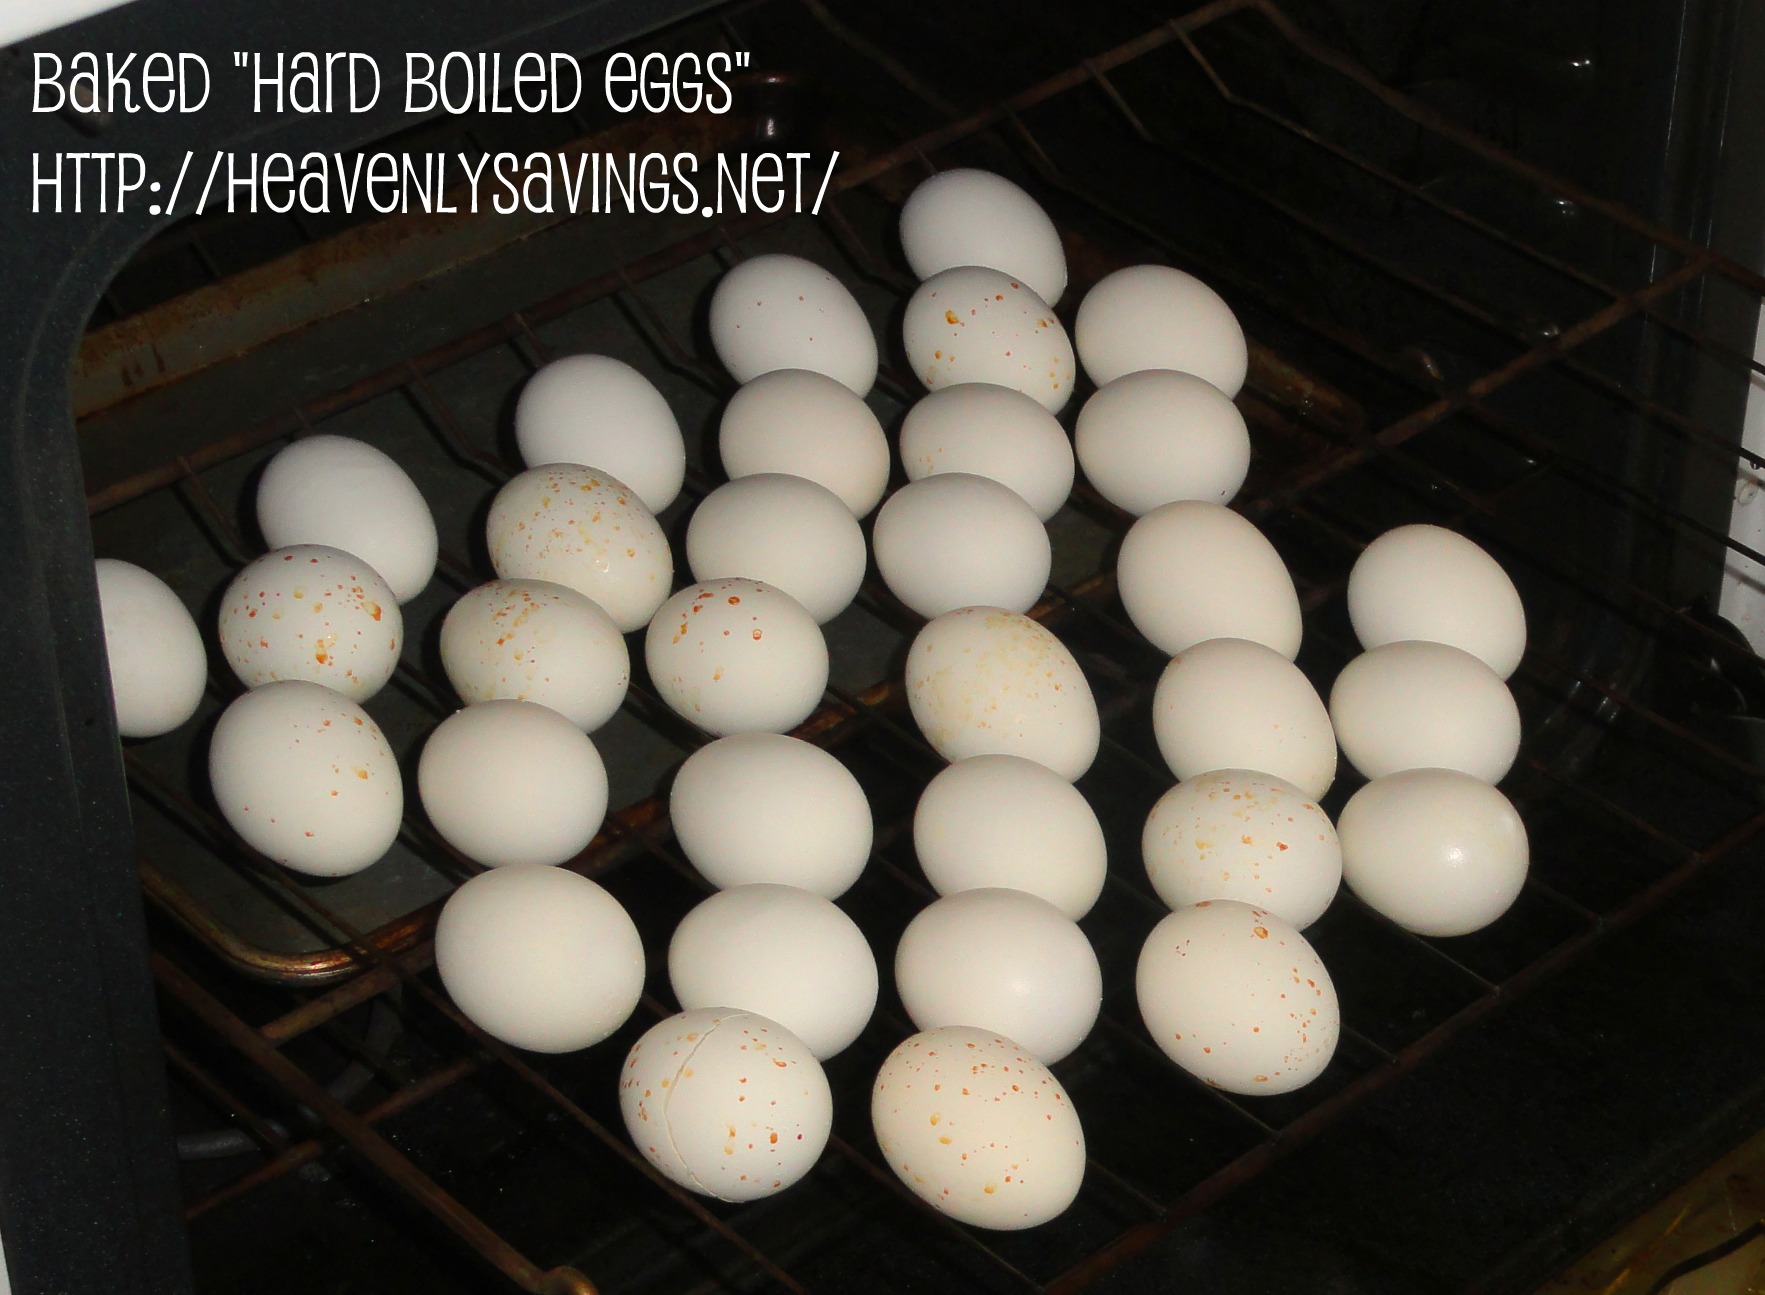 Baked “Hard Boiled” Eggs